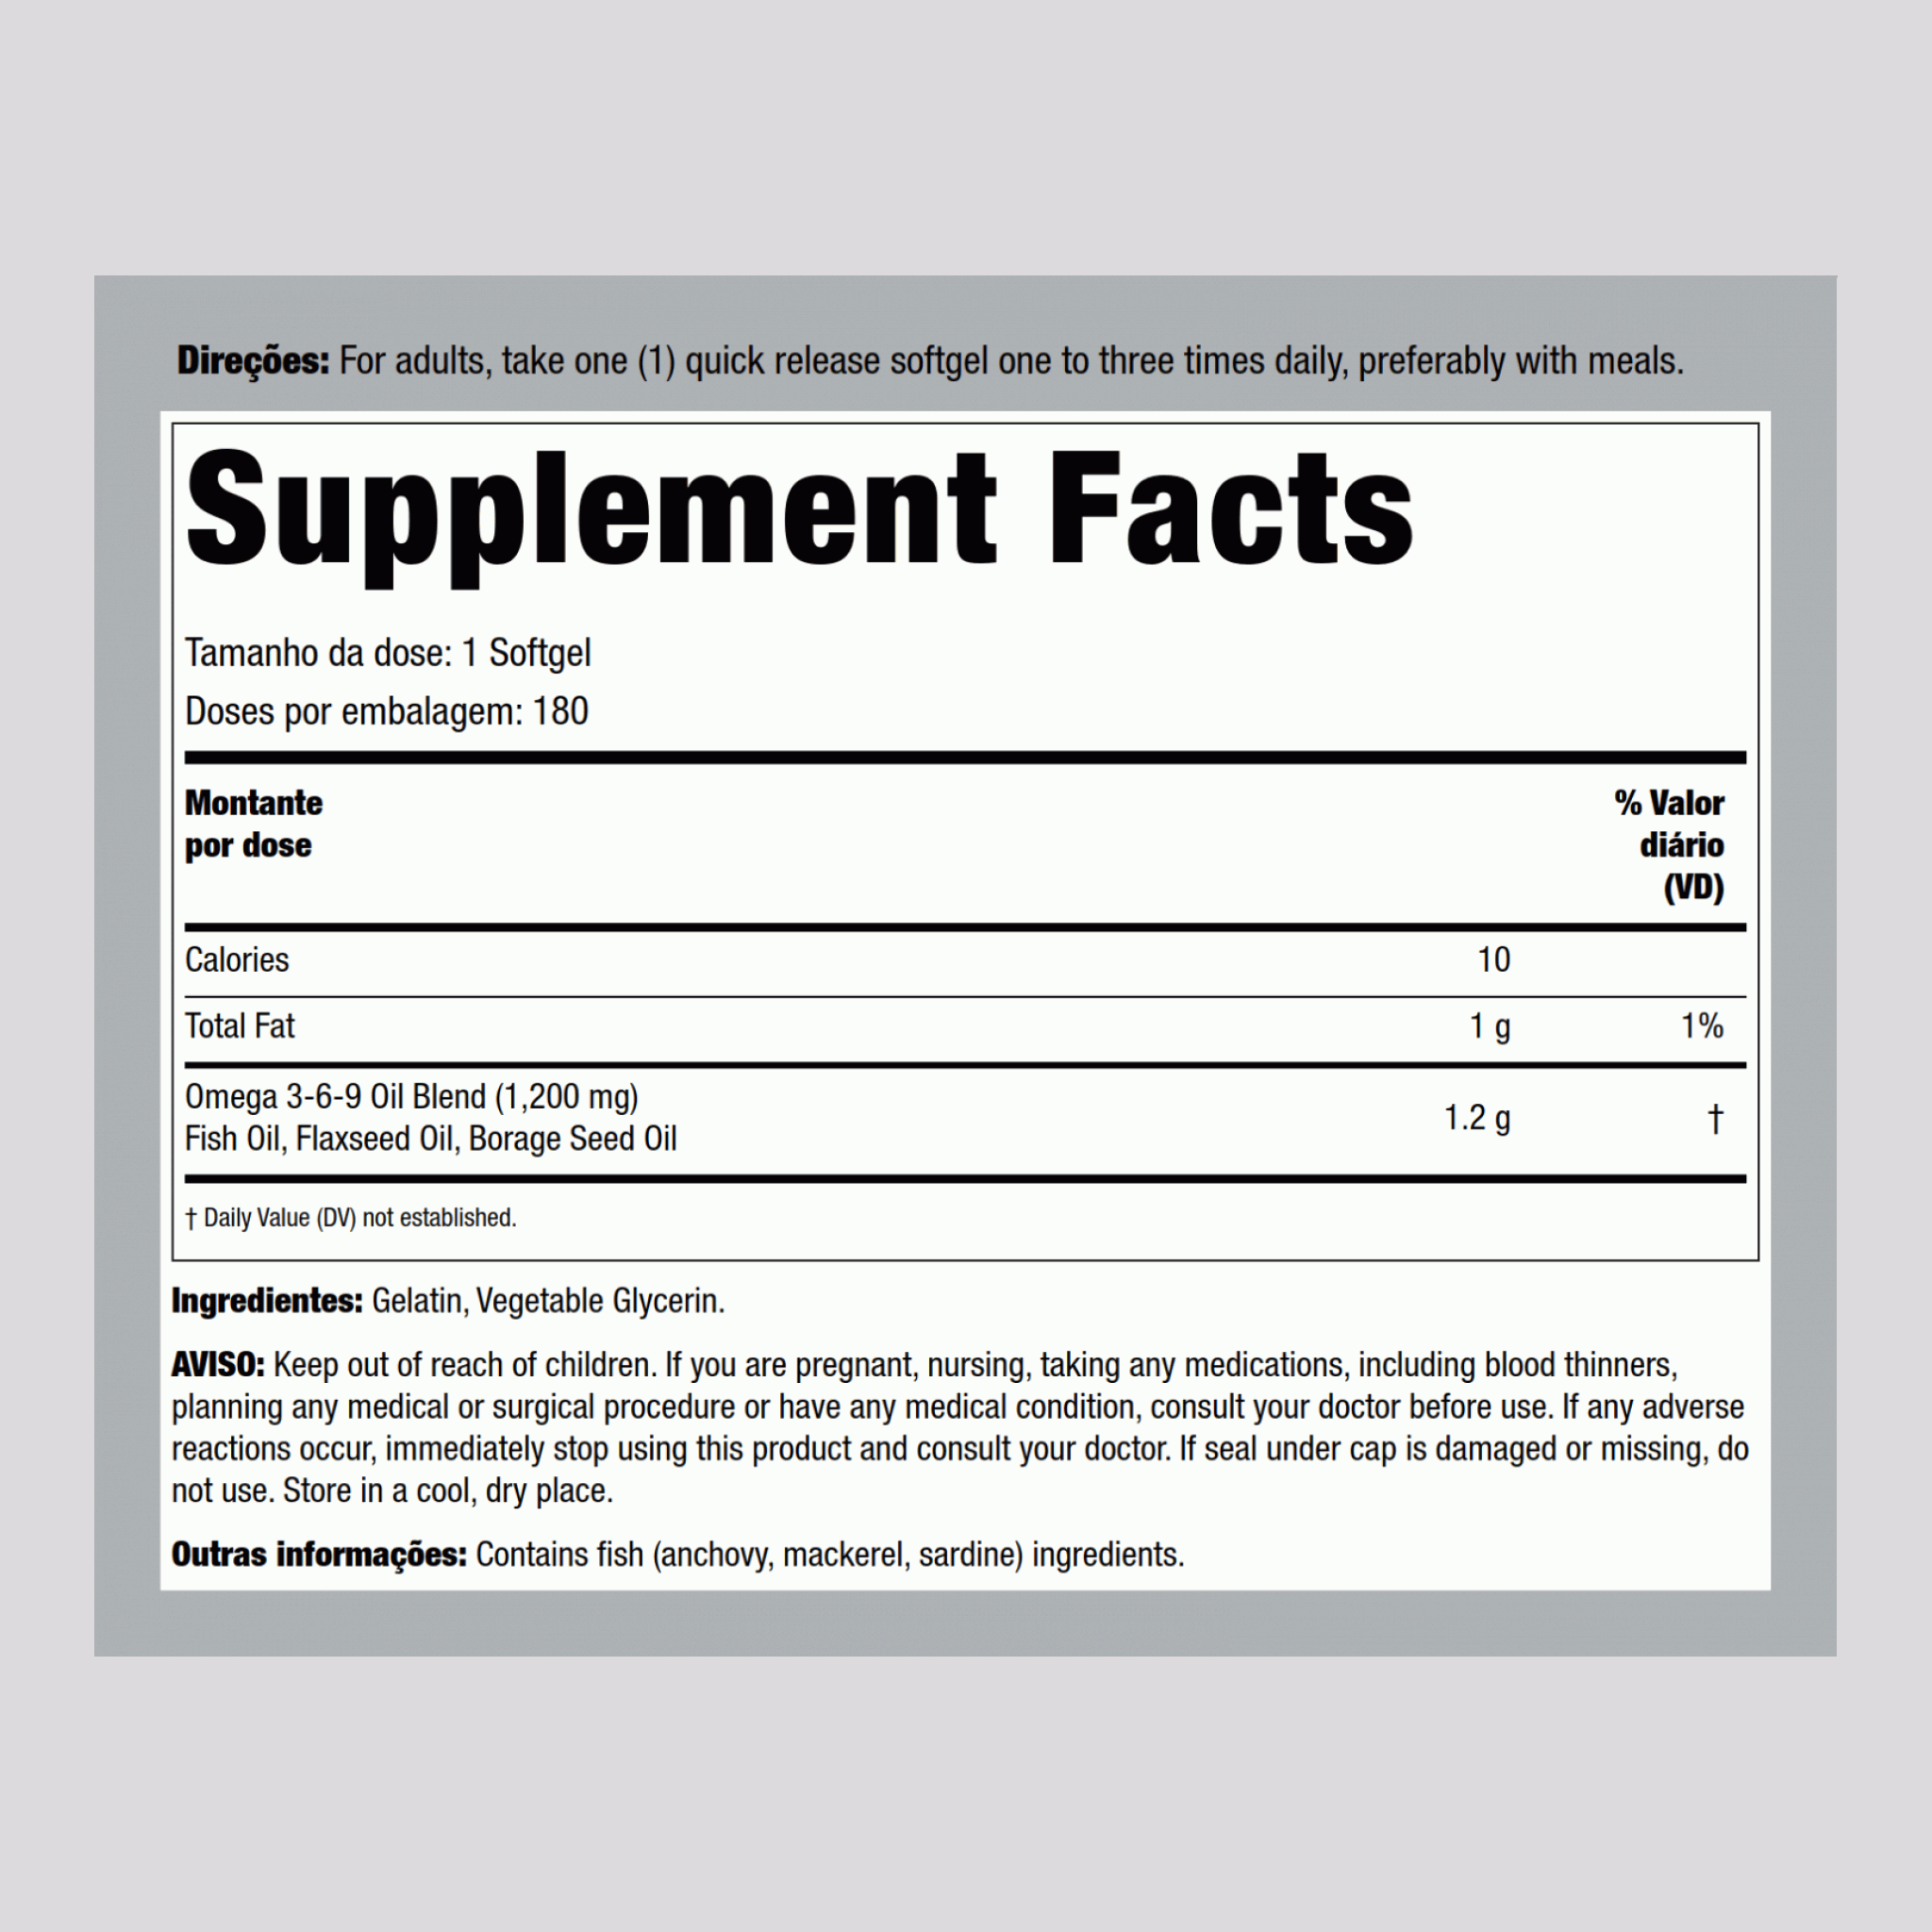 Ómega 3-6-9 Peixe, linhaça e borragem 1200 mg 180 Gels de Rápida Absorção     